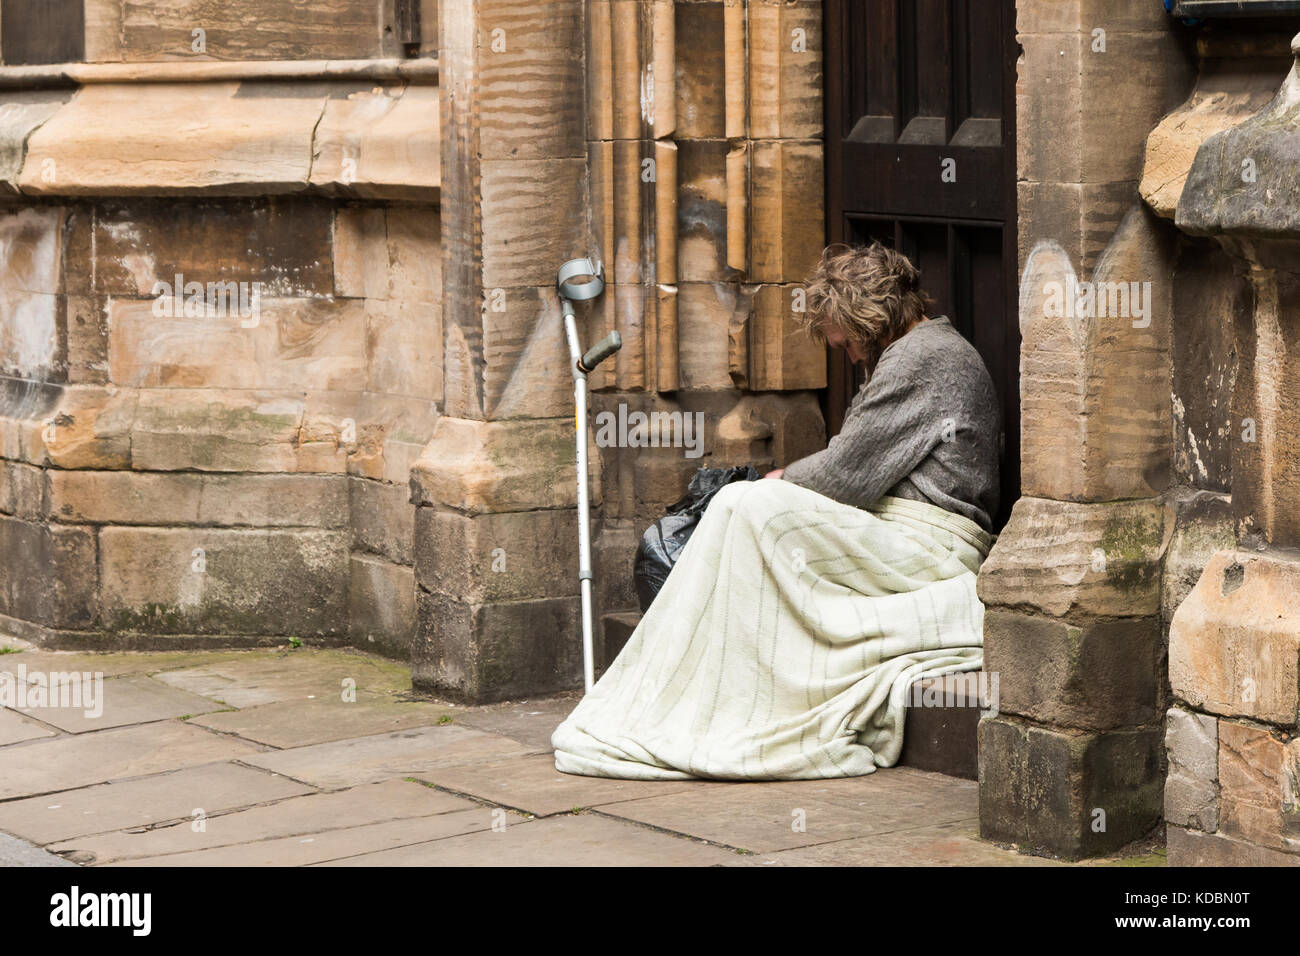 Obdachloser in York Großbritannien ruht. Decke über seine Knie, Arm Krücke, lehnte sich gegen die Wand. Der Mann lokking sehr traurig, verloren und einsam. graues Haar Stockfoto